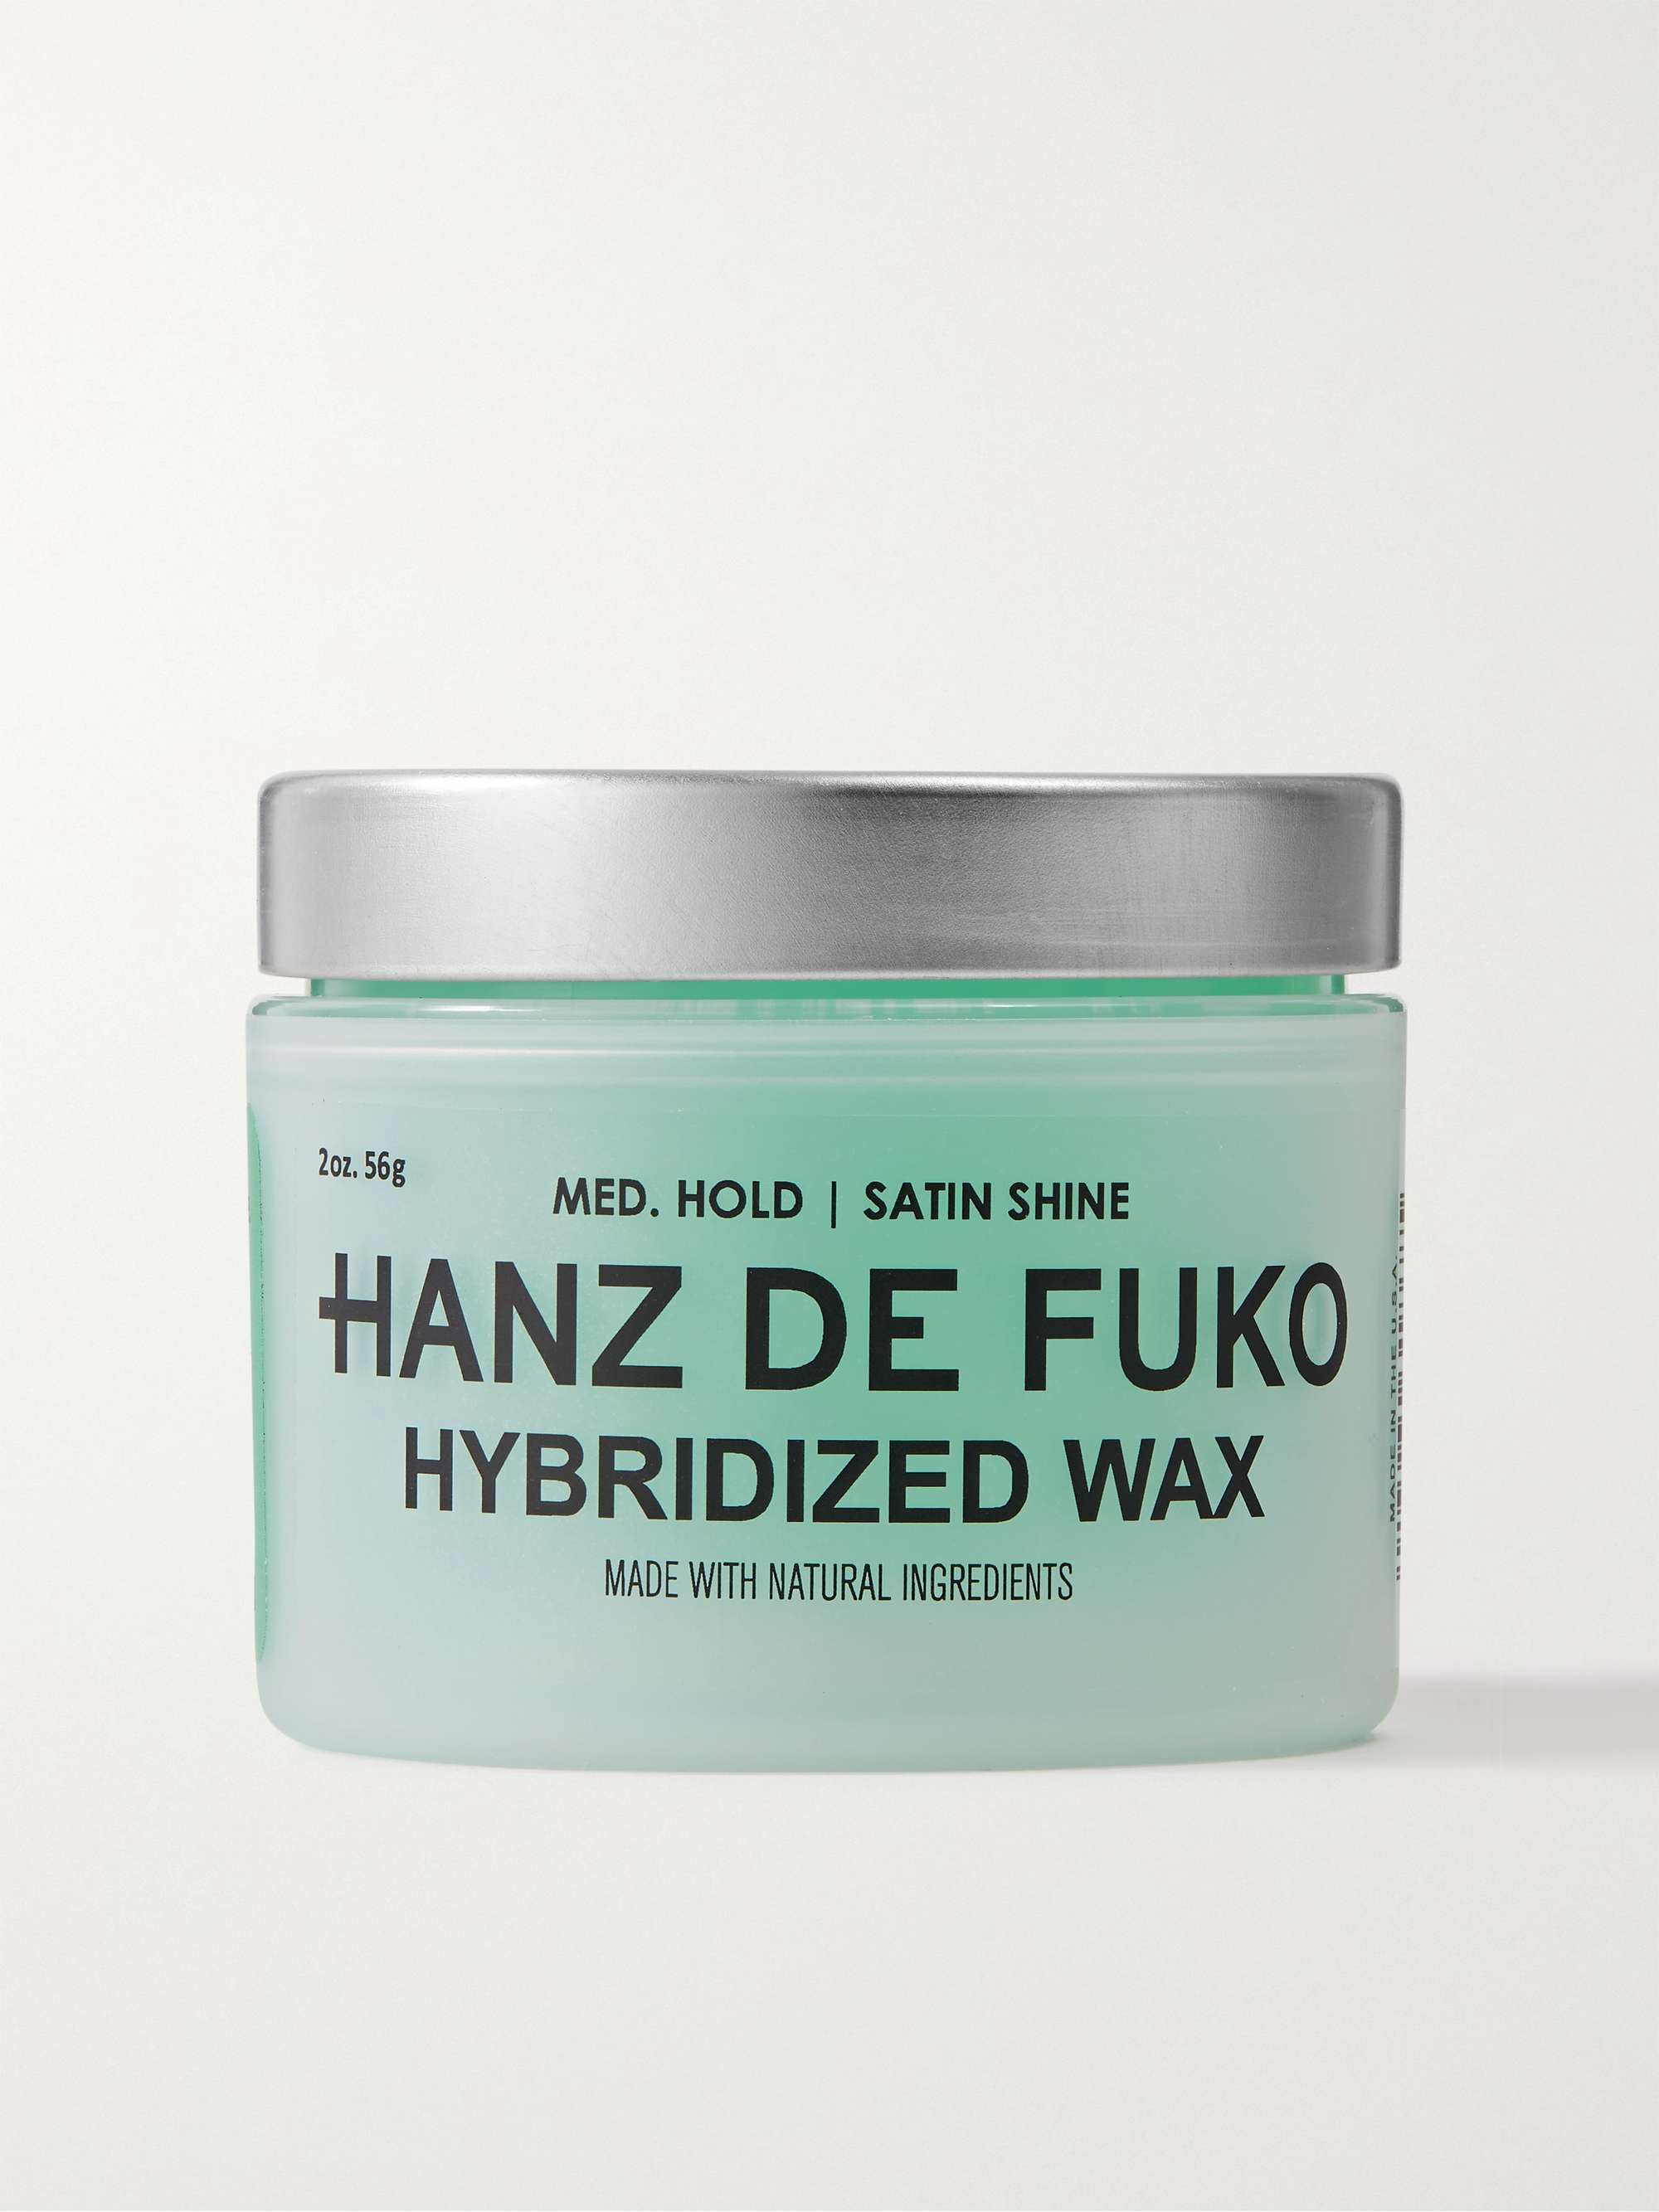 HANZ DE FUKO Hybridized Wax, 56g